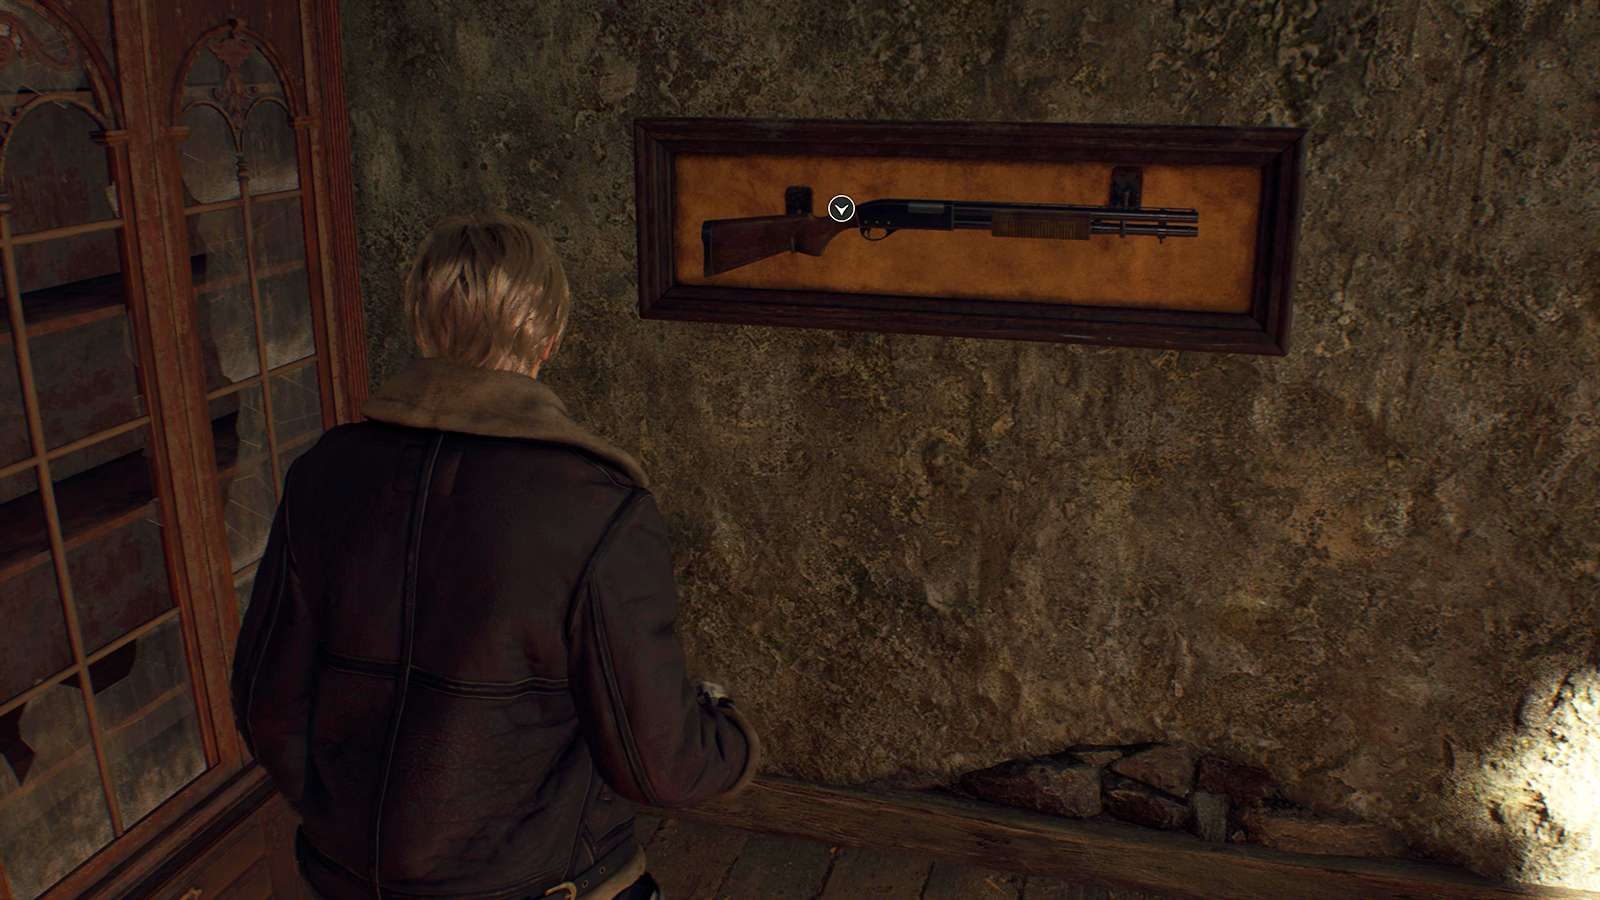 The Shotgun in Resident Evil 4 remake